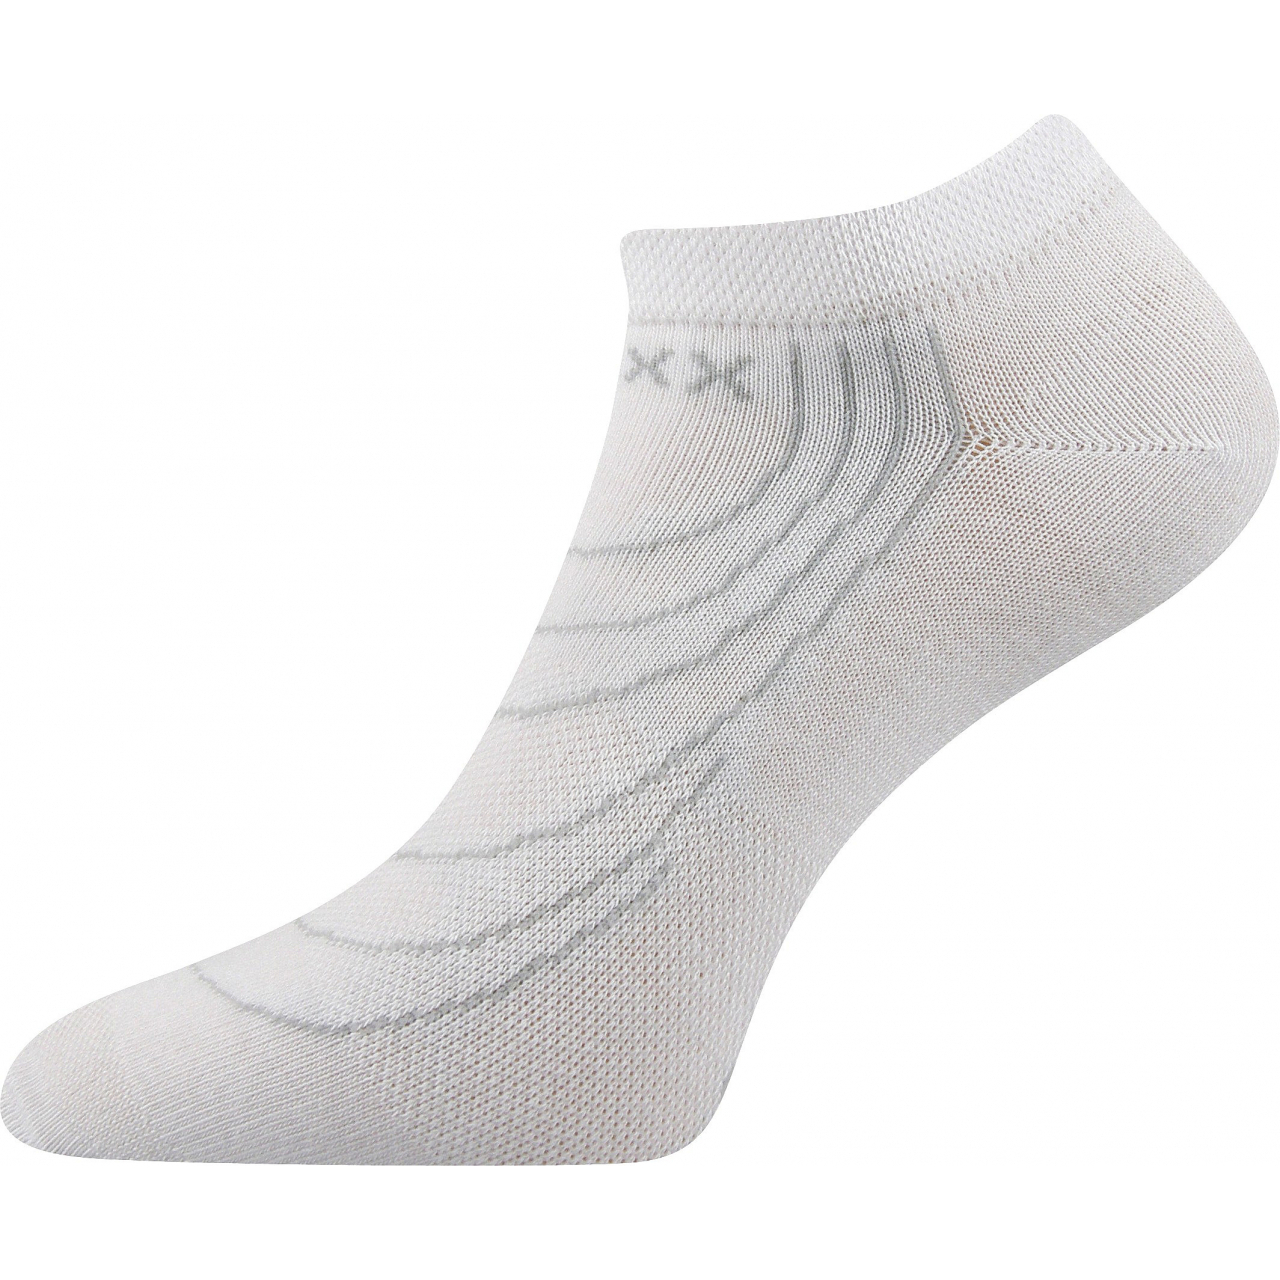 Ponožky nízké Voxx Rex - bílé, 39-42